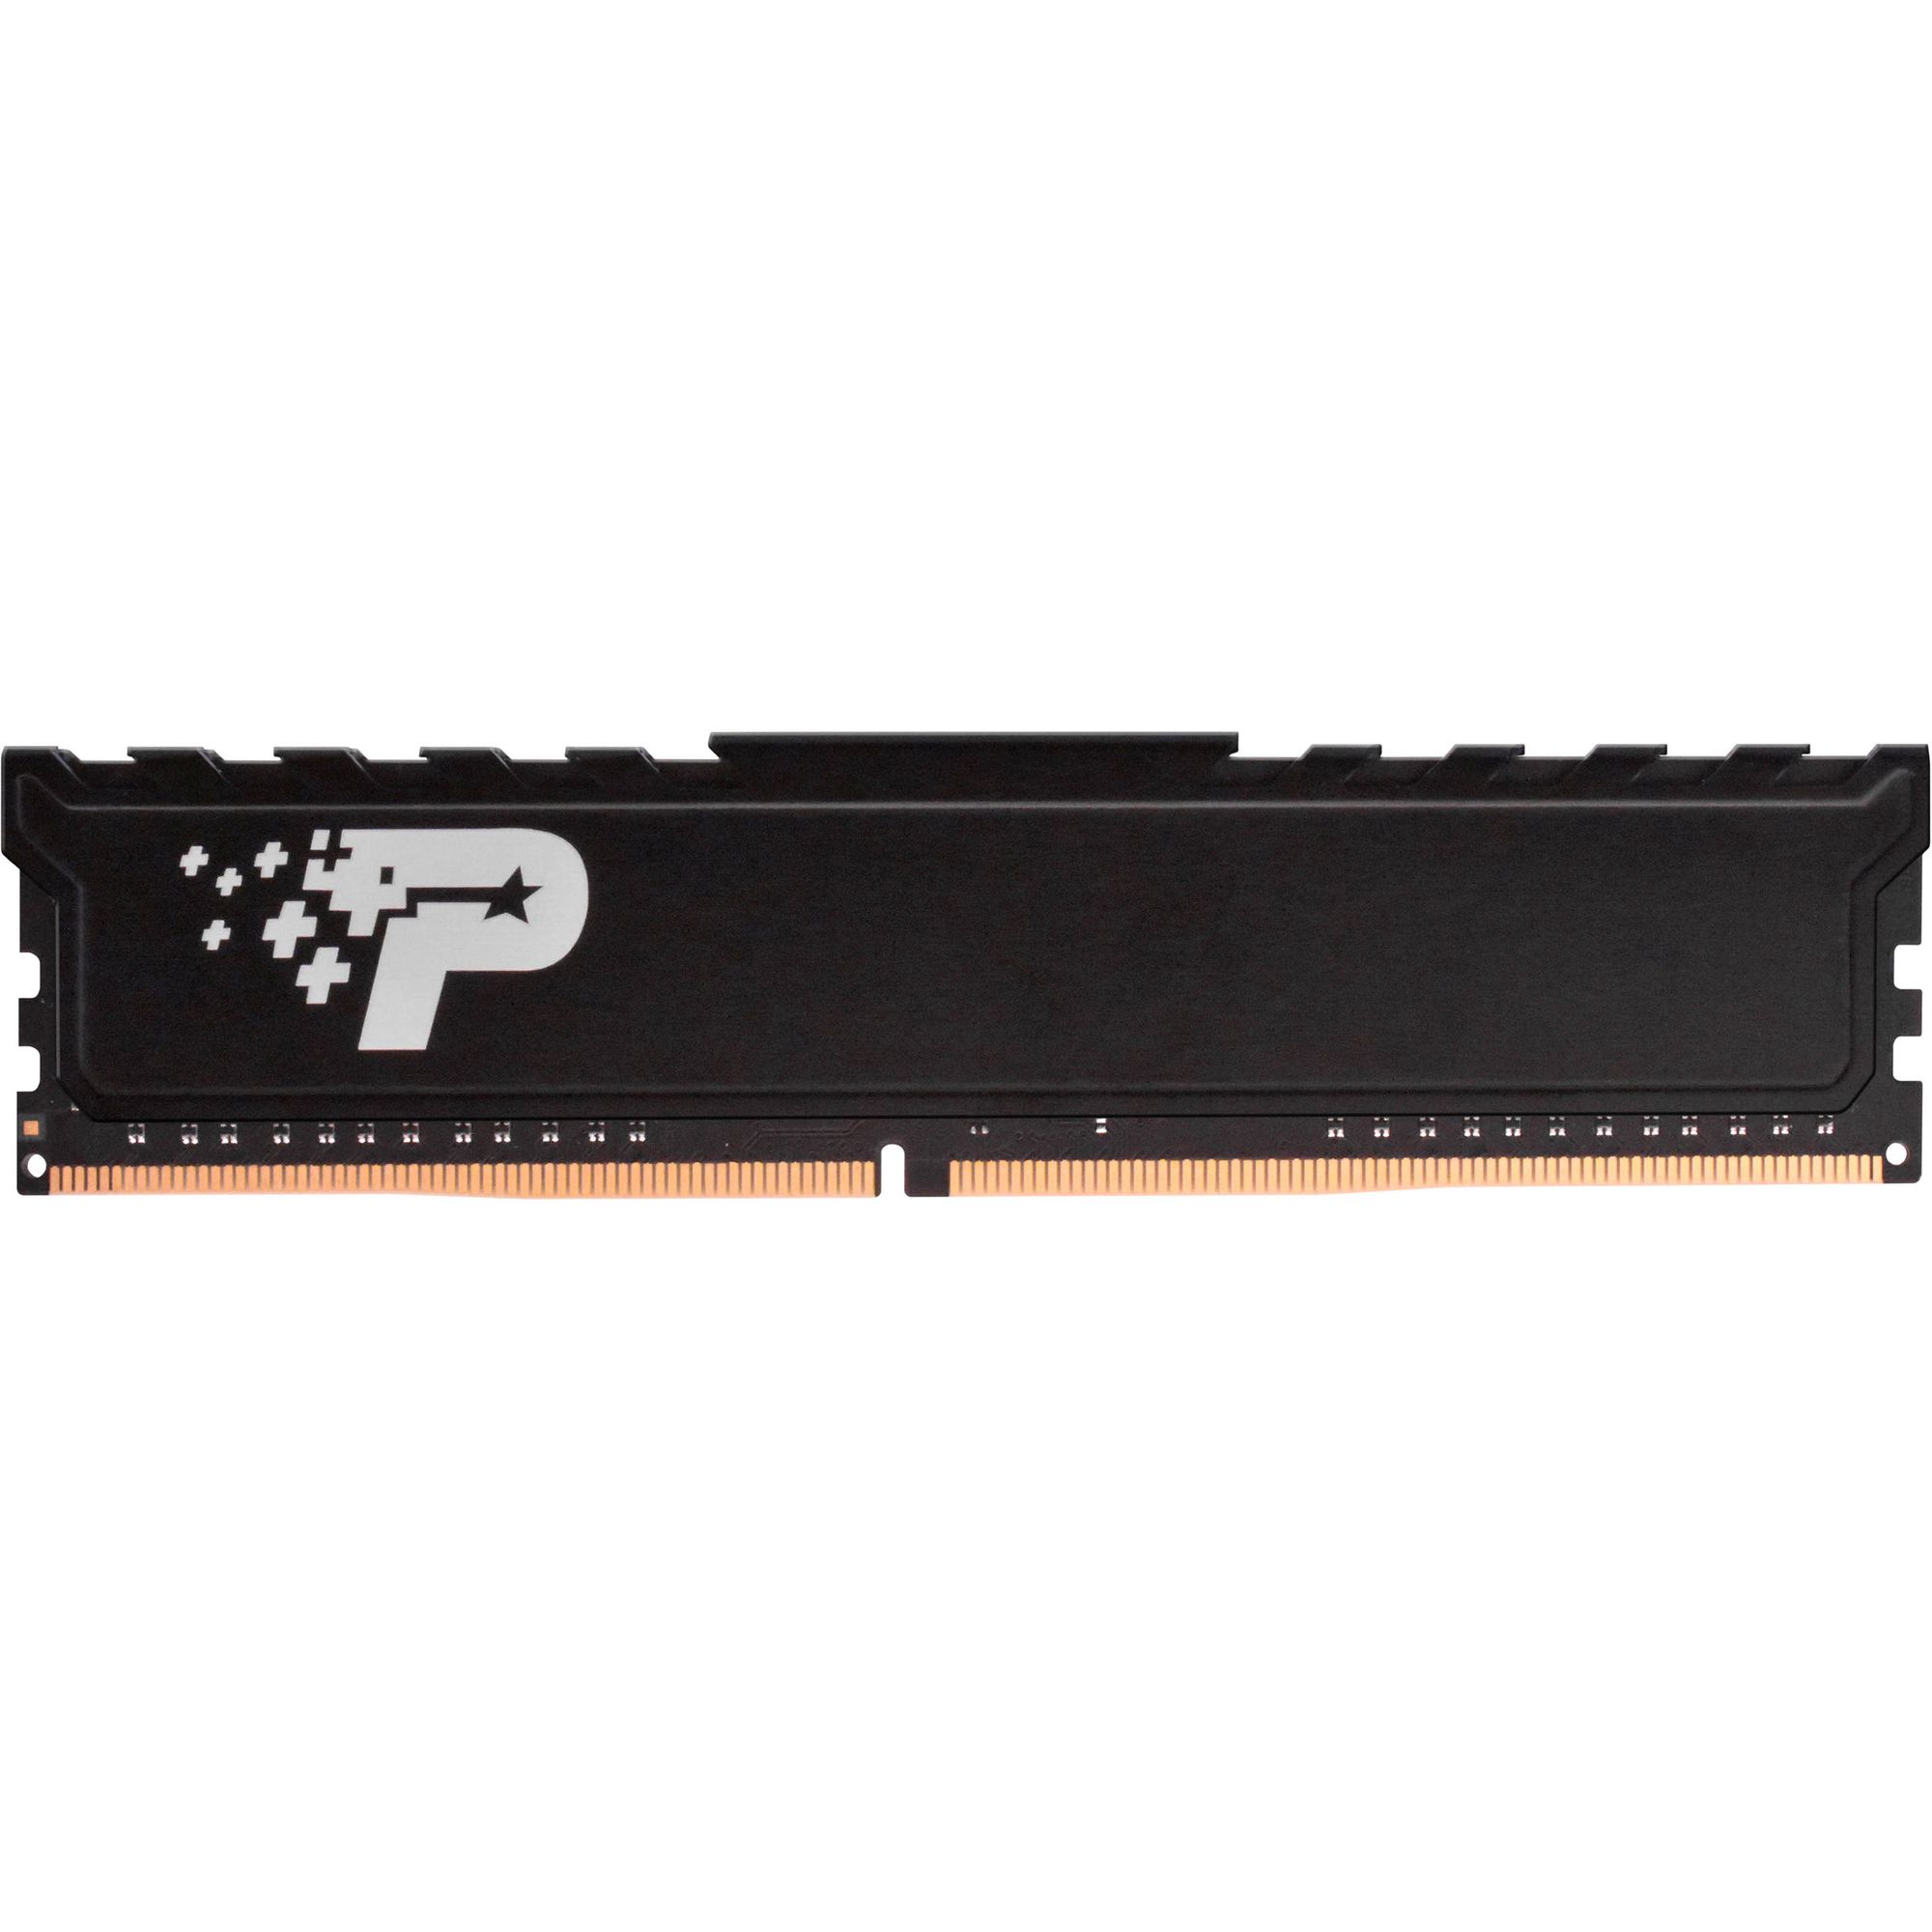 Память оперативная DDR4 Patriot Memory SL Premium 16Gb 2666MHz (PSP416G26662H1) память оперативная ddr4 patriot sl premium 8gb 2666mhz psp48g266681h1